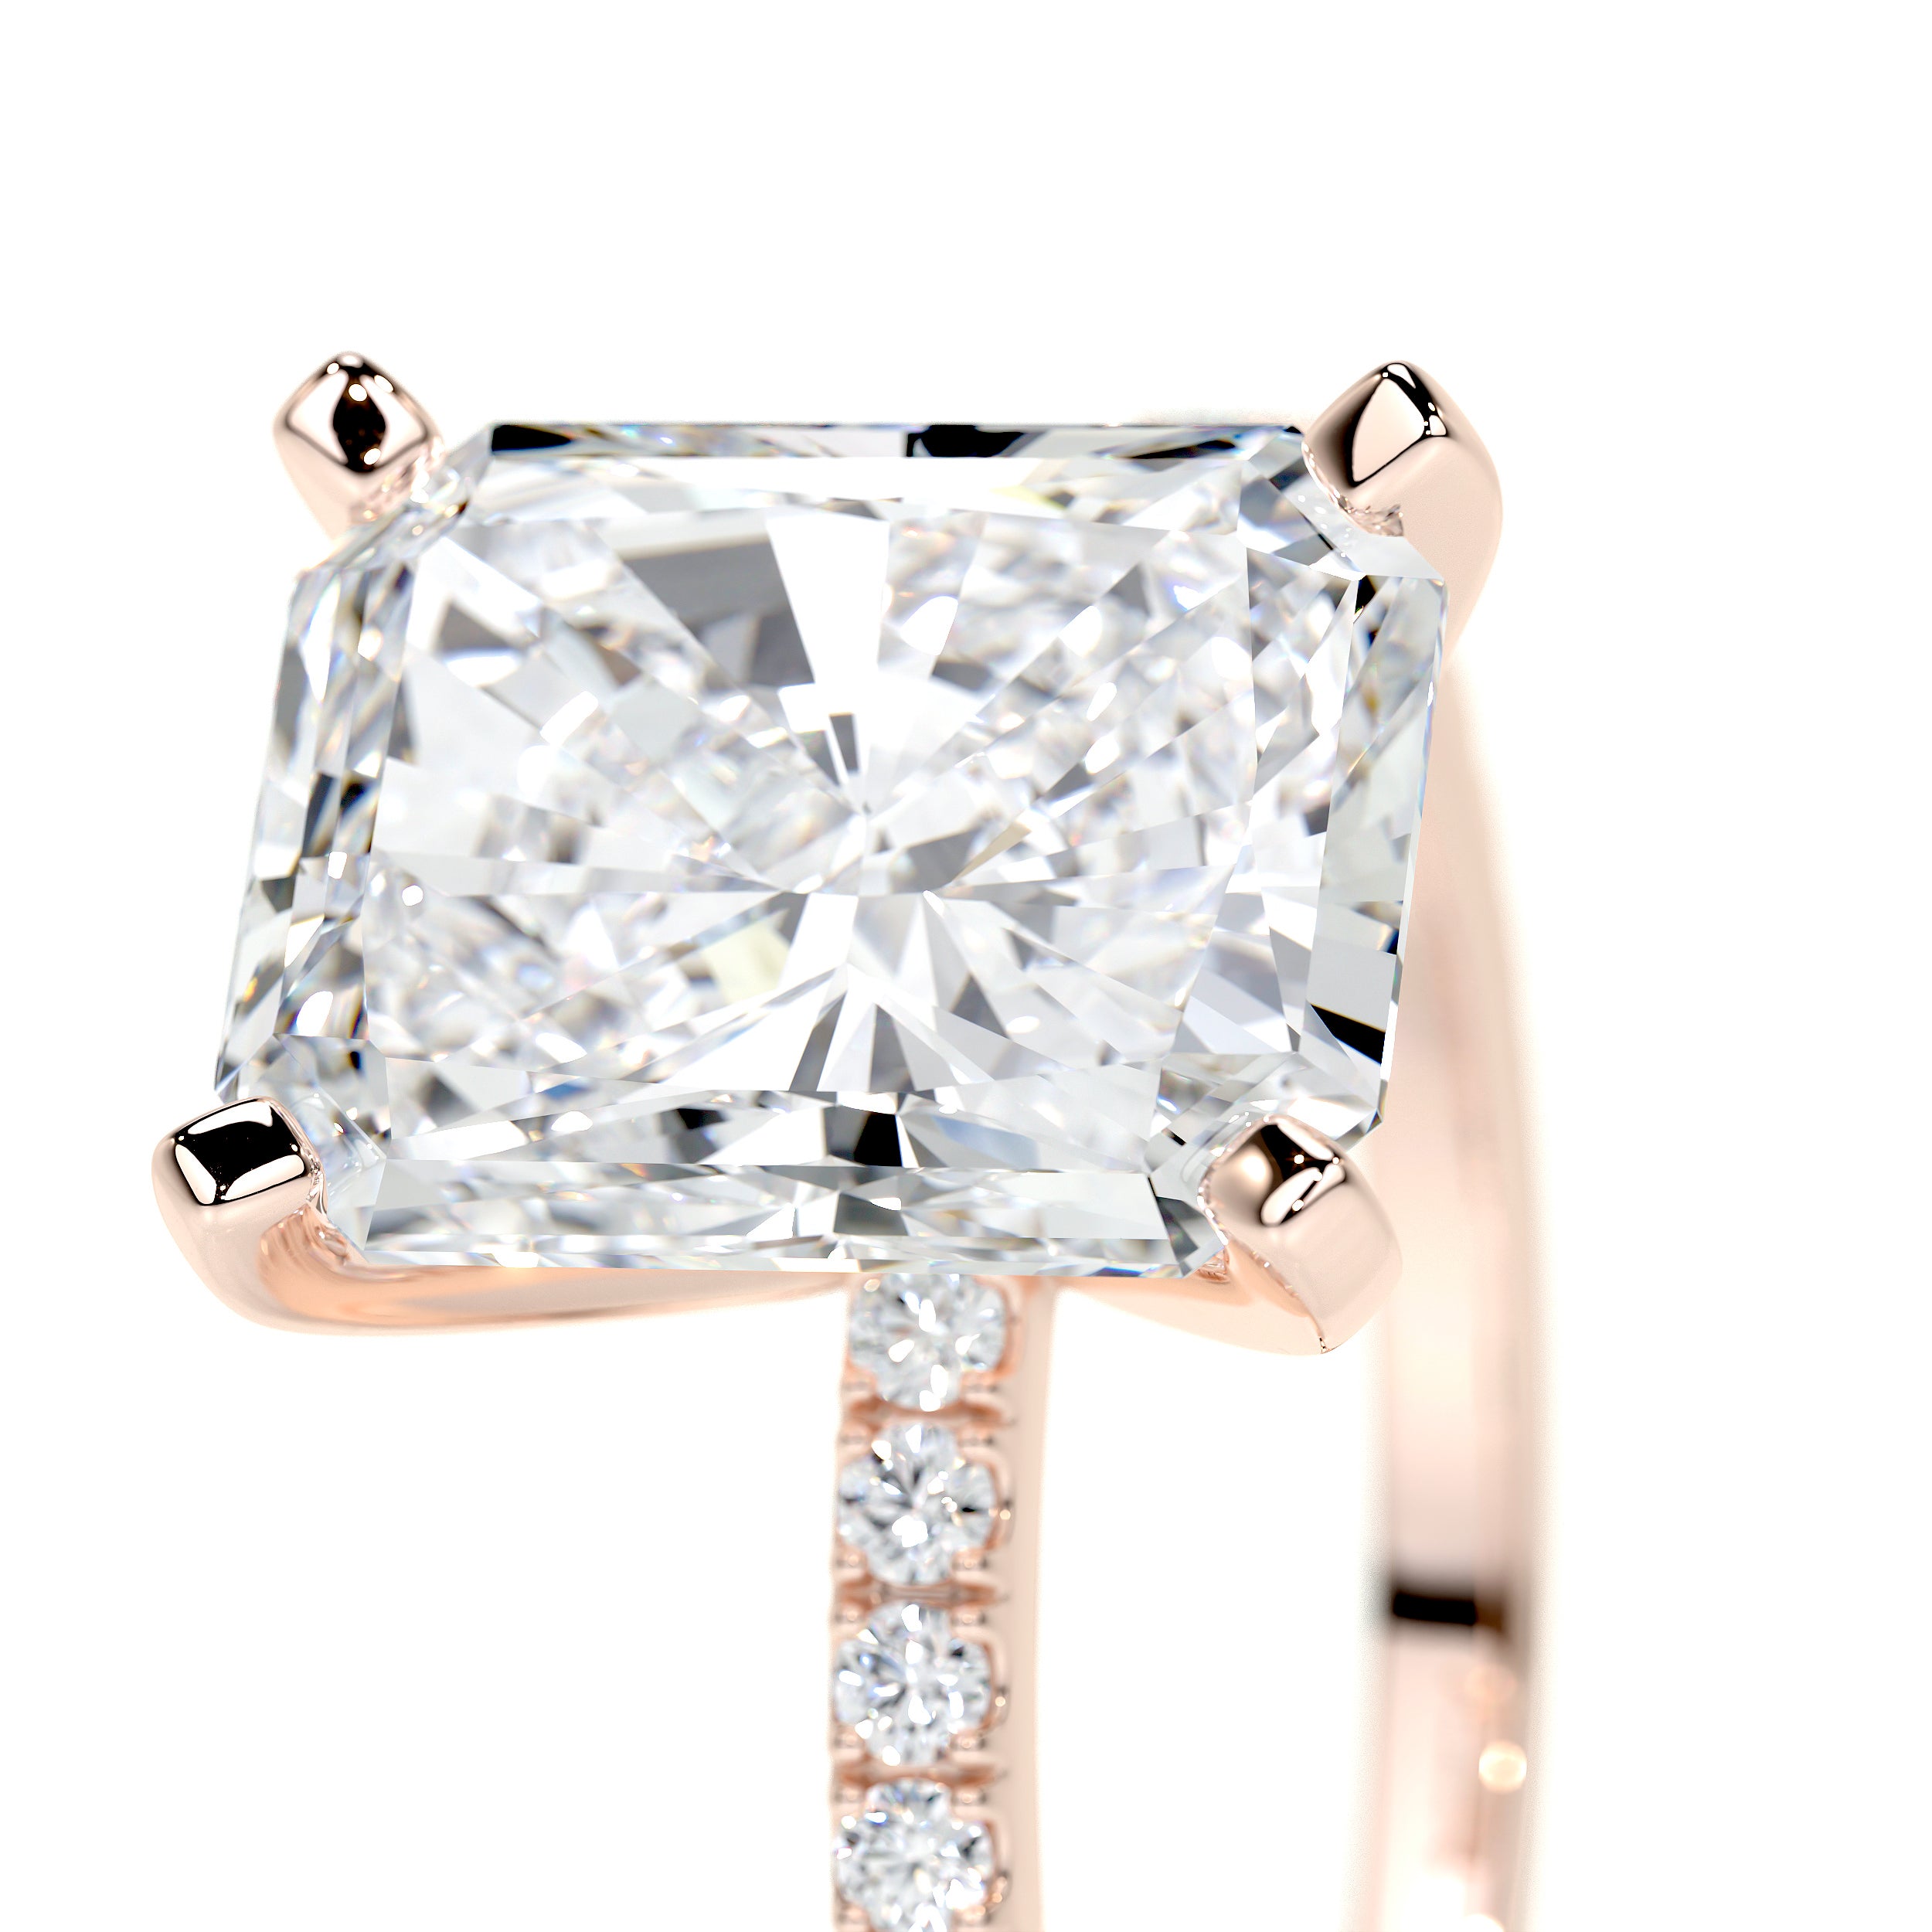 Audrey Lab Grown Diamond Ring -14K Rose Gold